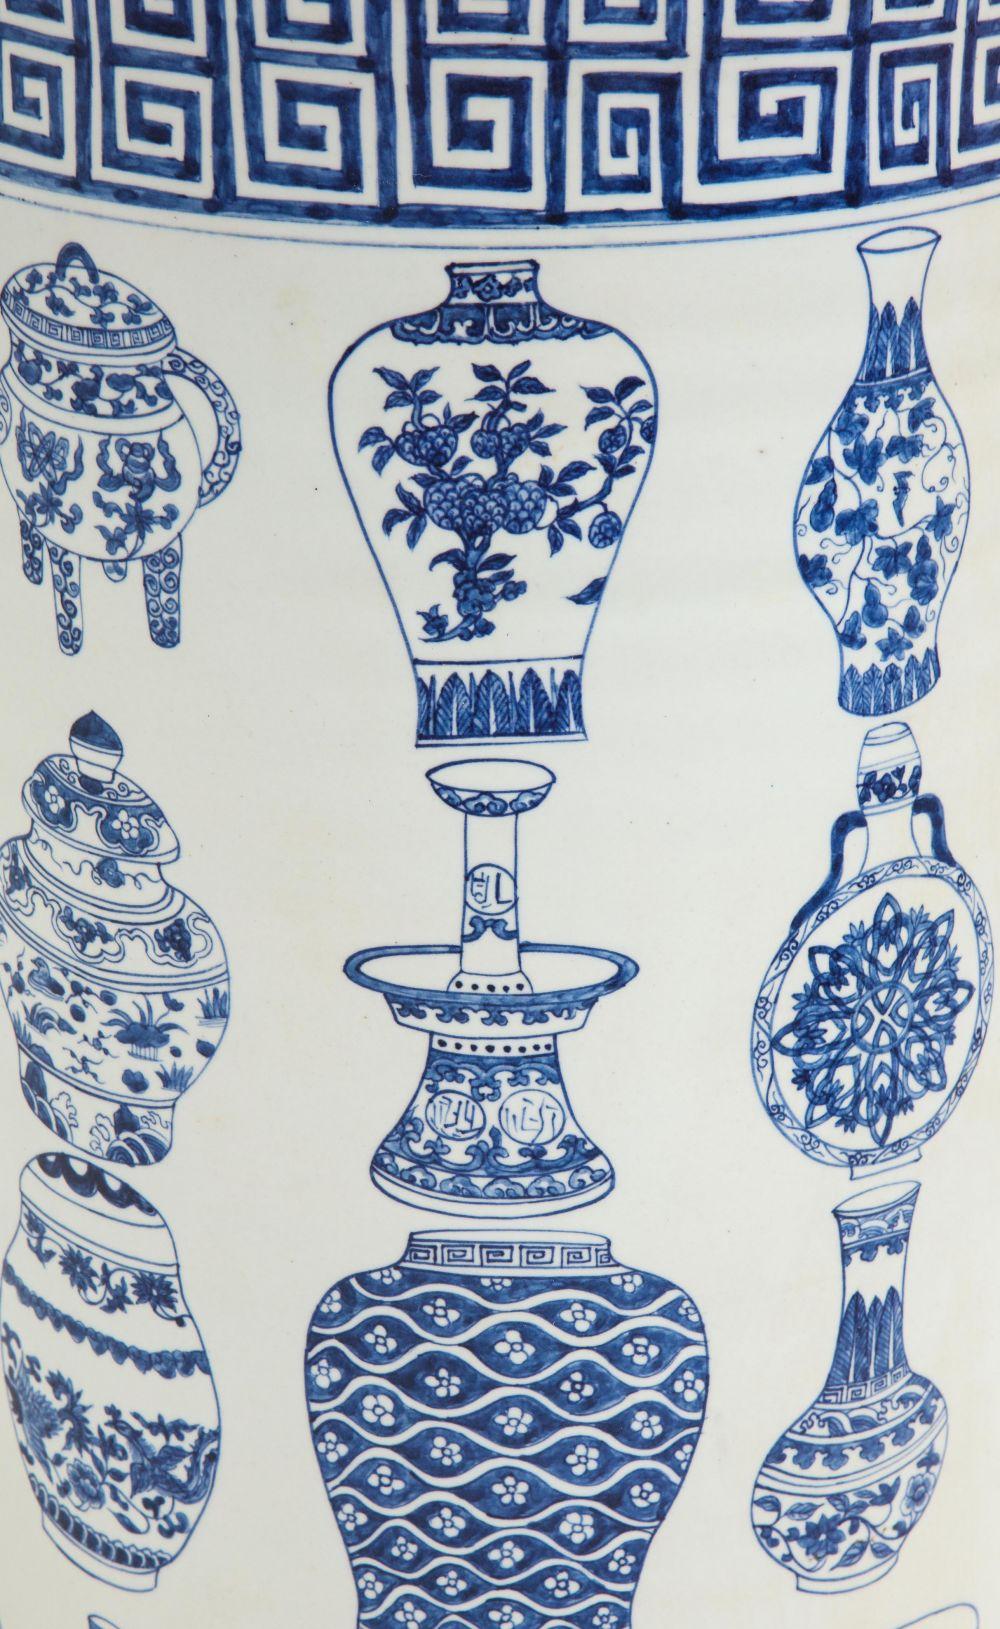 Von zylindrischer Form; mit Mäanderbordüren; dekoriert mit einer Auswahl verschiedener blauer und weißer chinesischer Vasen.